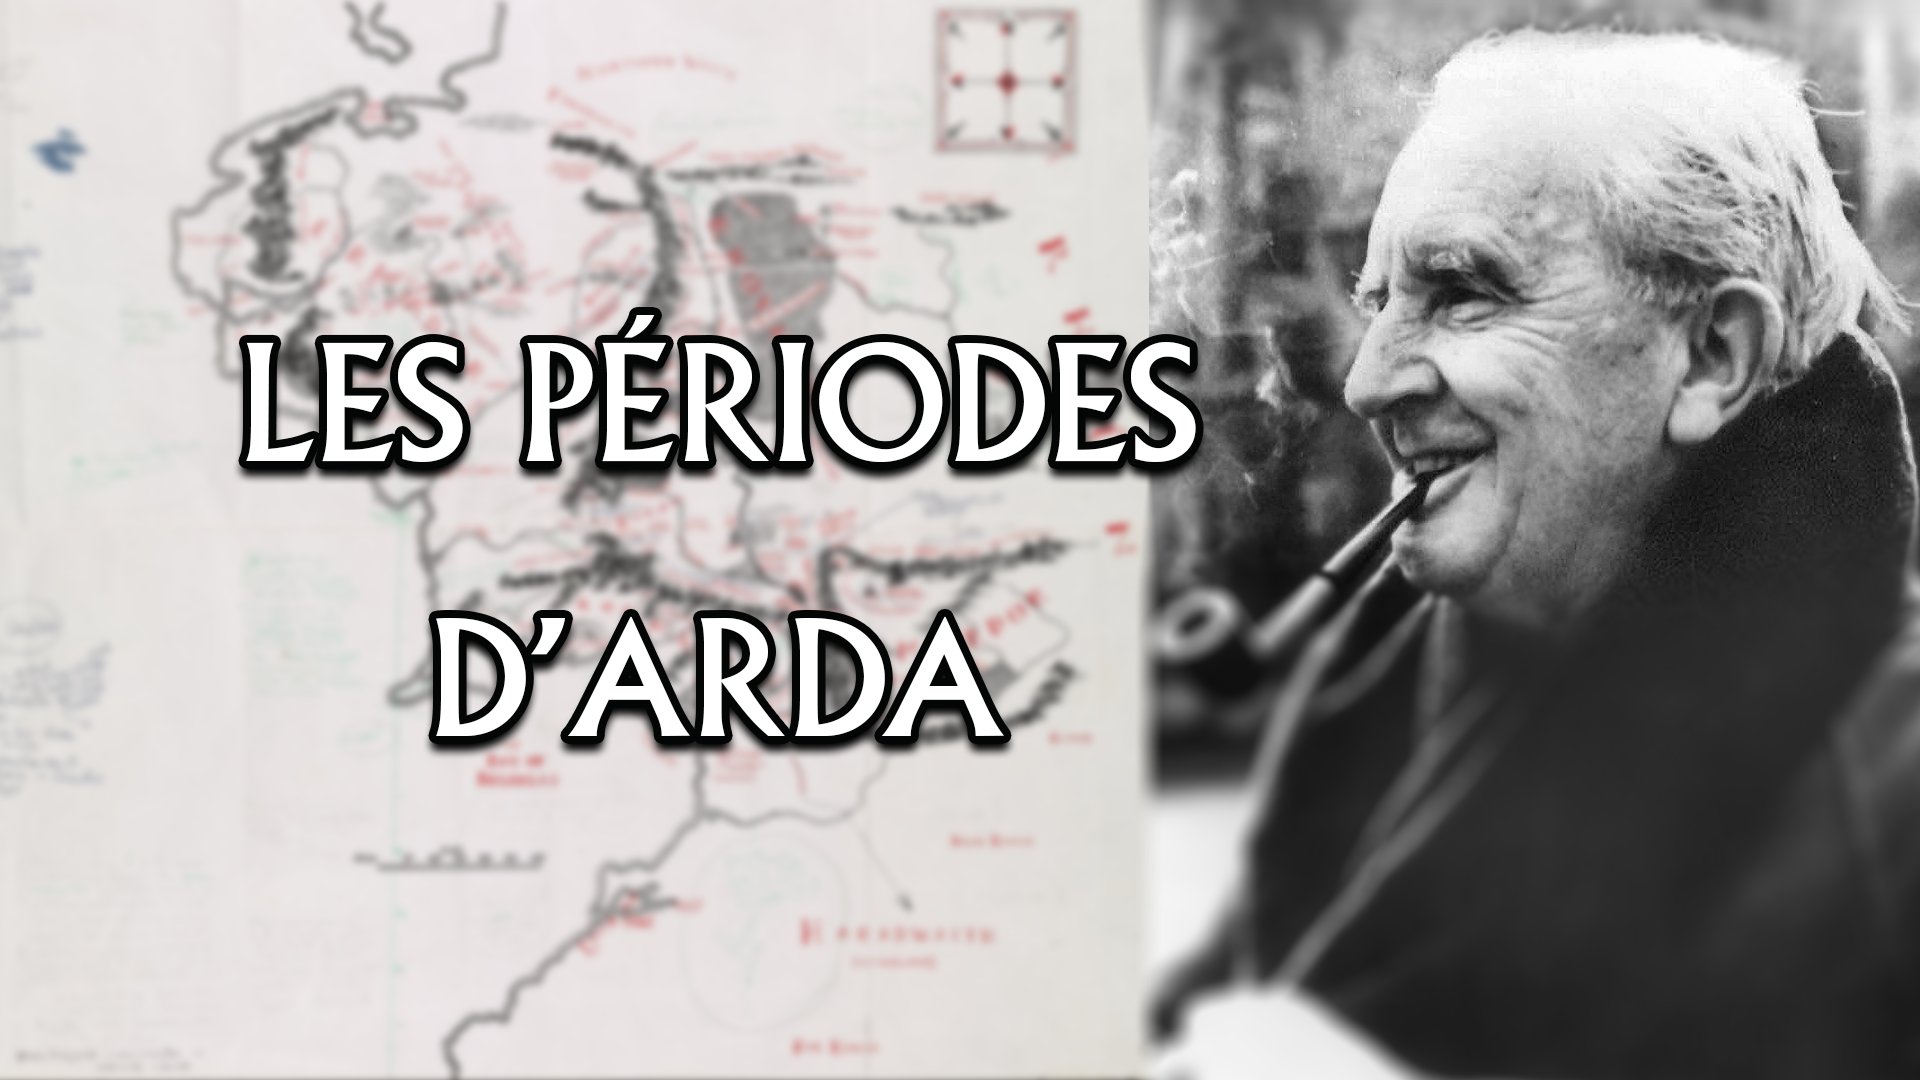 Tout savoir sur les différentes périodes du monde (Arda) imaginé par J.R.R. Tolkien ✍️